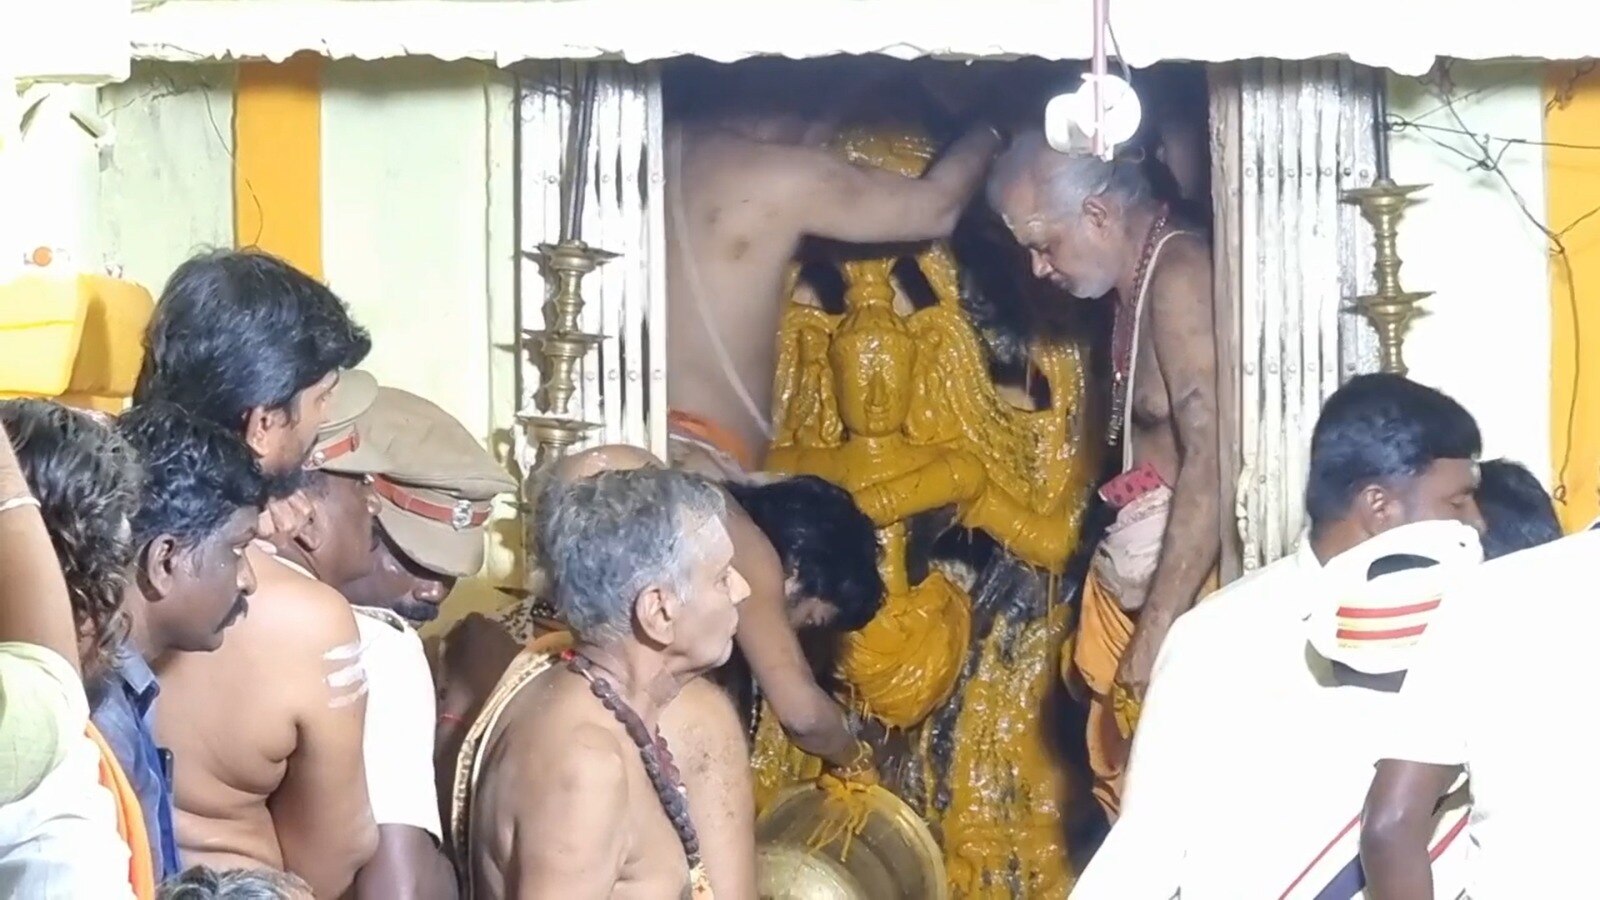 மரகத நடராஜர் காட்சியளித்தார்... உத்திரகோச மங்கையில் குவிந்த பக்தர்கள் கூட்டம்.!